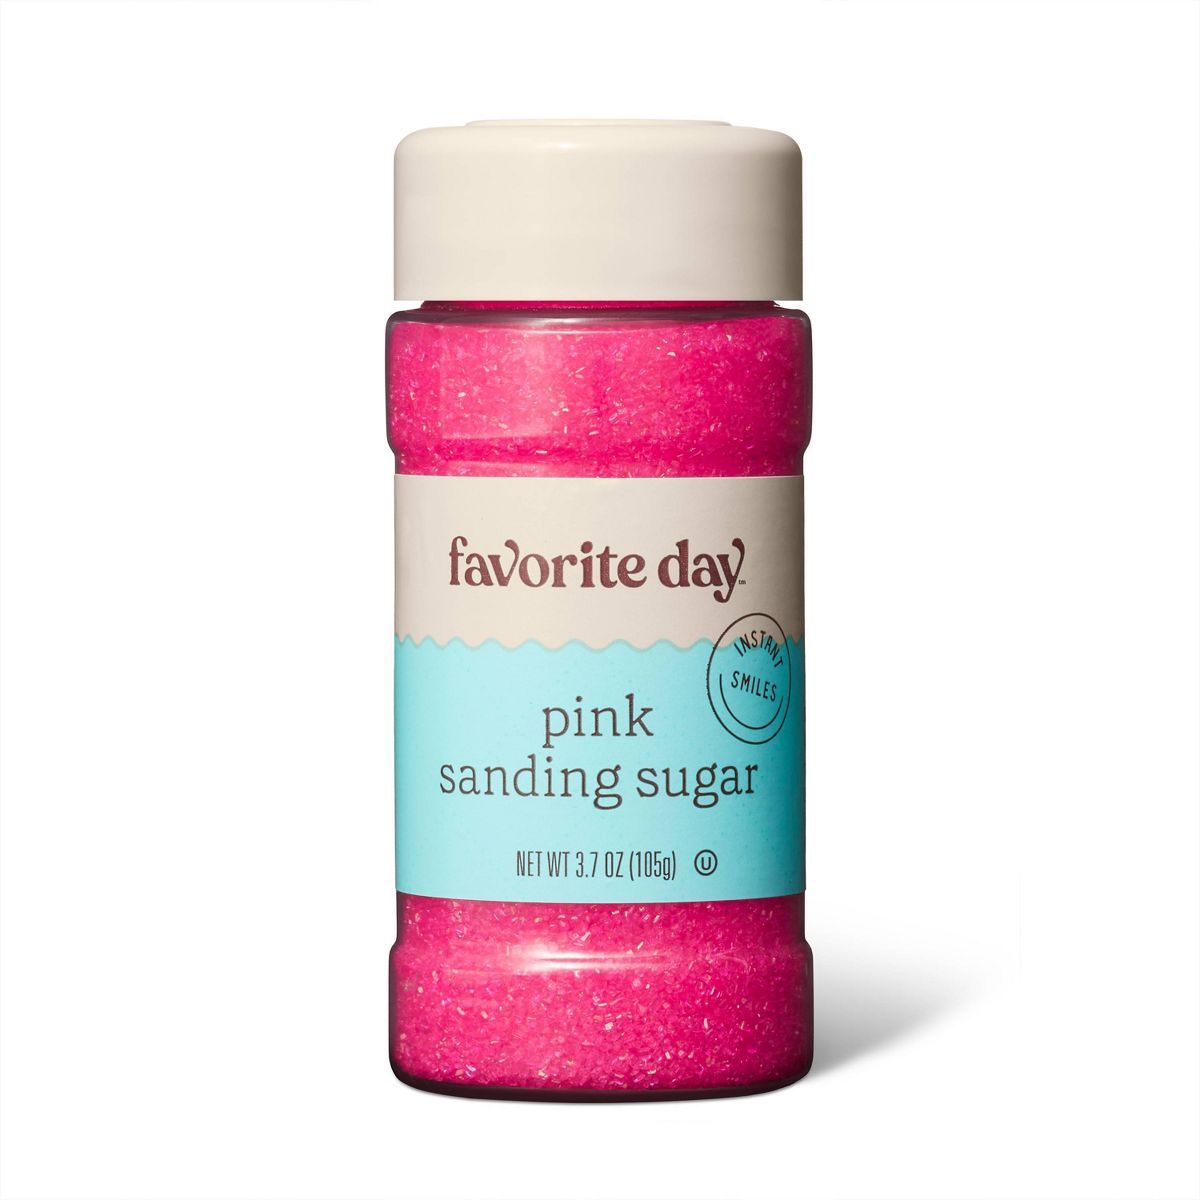 Pink Sanding Sugar - 3.7oz - Favorite Day™ | Target